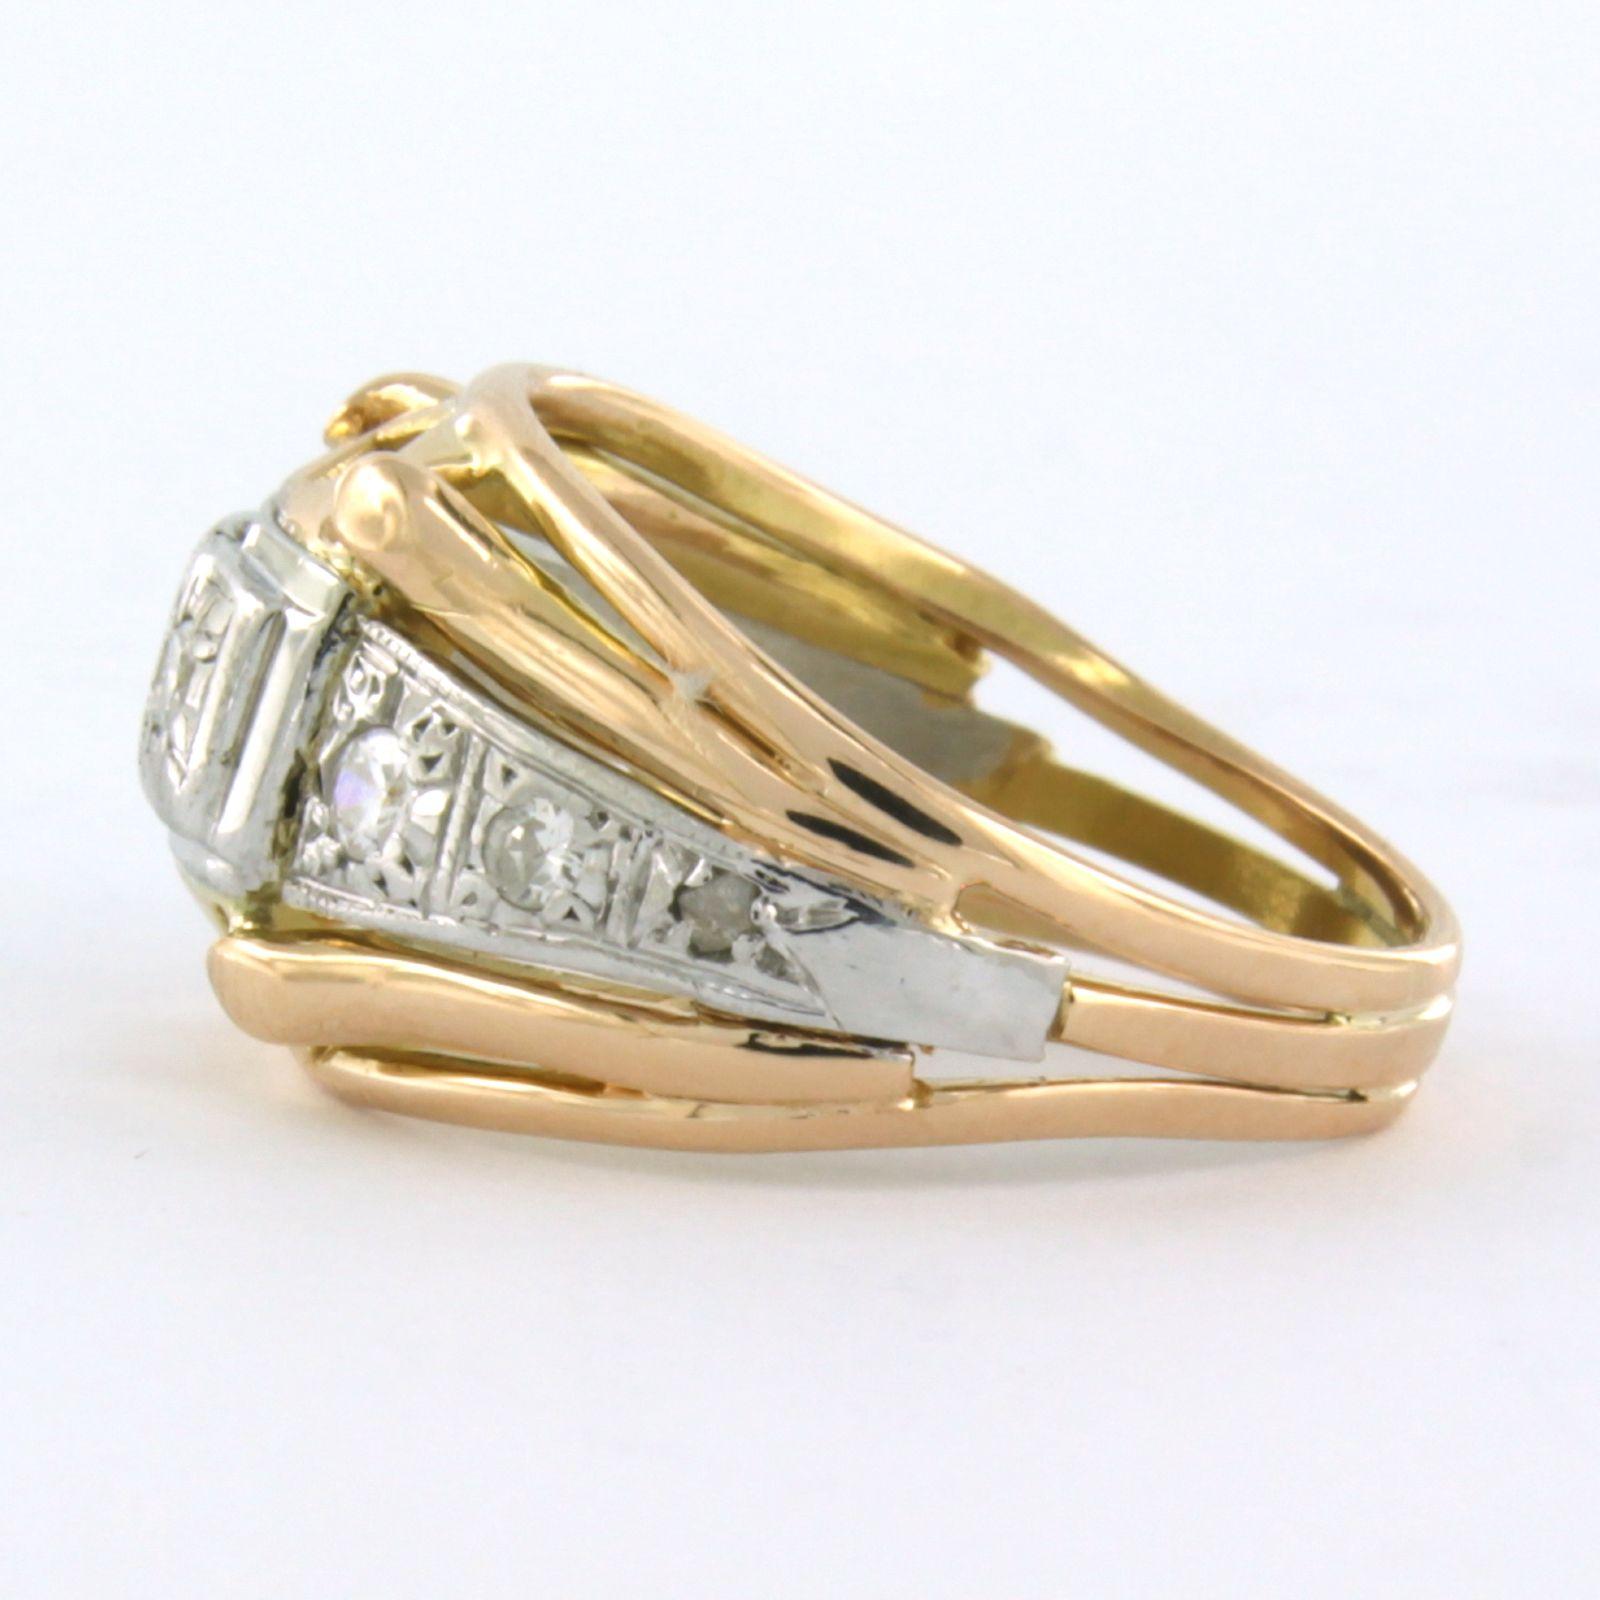 Bague en or bicolore 18k avec un diamant de taille européenne jusqu'à 0.22ct - F/G - VS/SI - taille de bague U.S. 6.5 - EU. 17 (53)

description détaillée :

le haut de l'anneau mesure 1,2 cm de large et 5,0 mm de haut

poids 5,9 grammes

bague